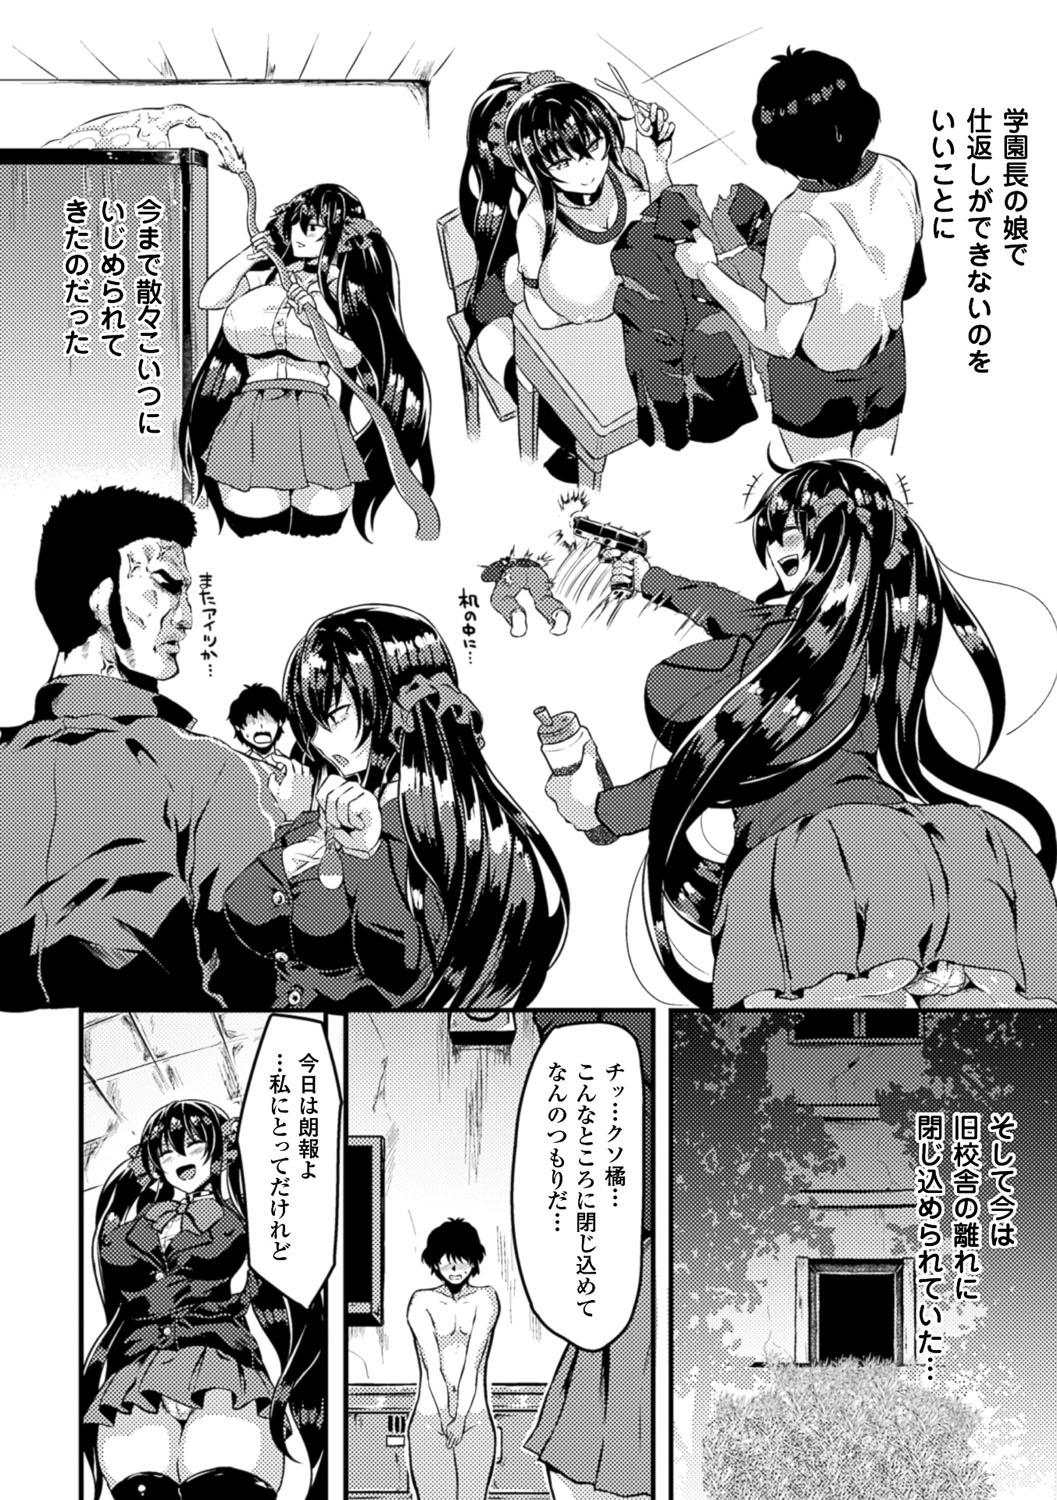 Bessatsu Comic Unreal Ijimekko ni Fushigi na Chikara de Fukushuu Hen Digital Ban Vol. 2 6